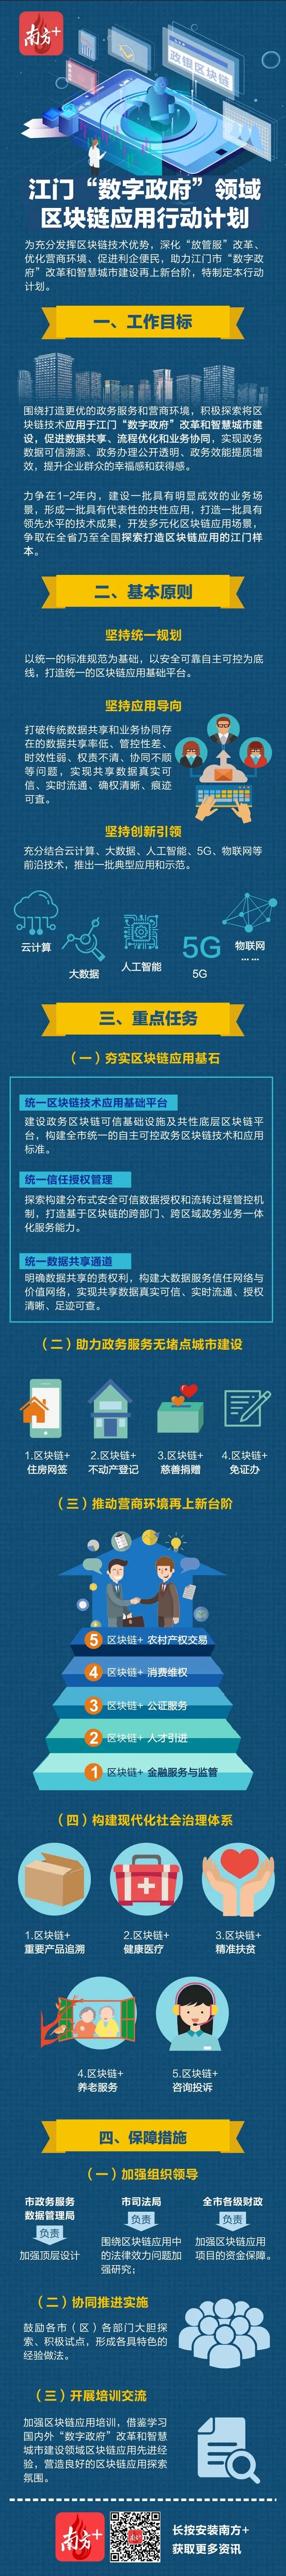 江门市数字政府领域区块链应用行动计划